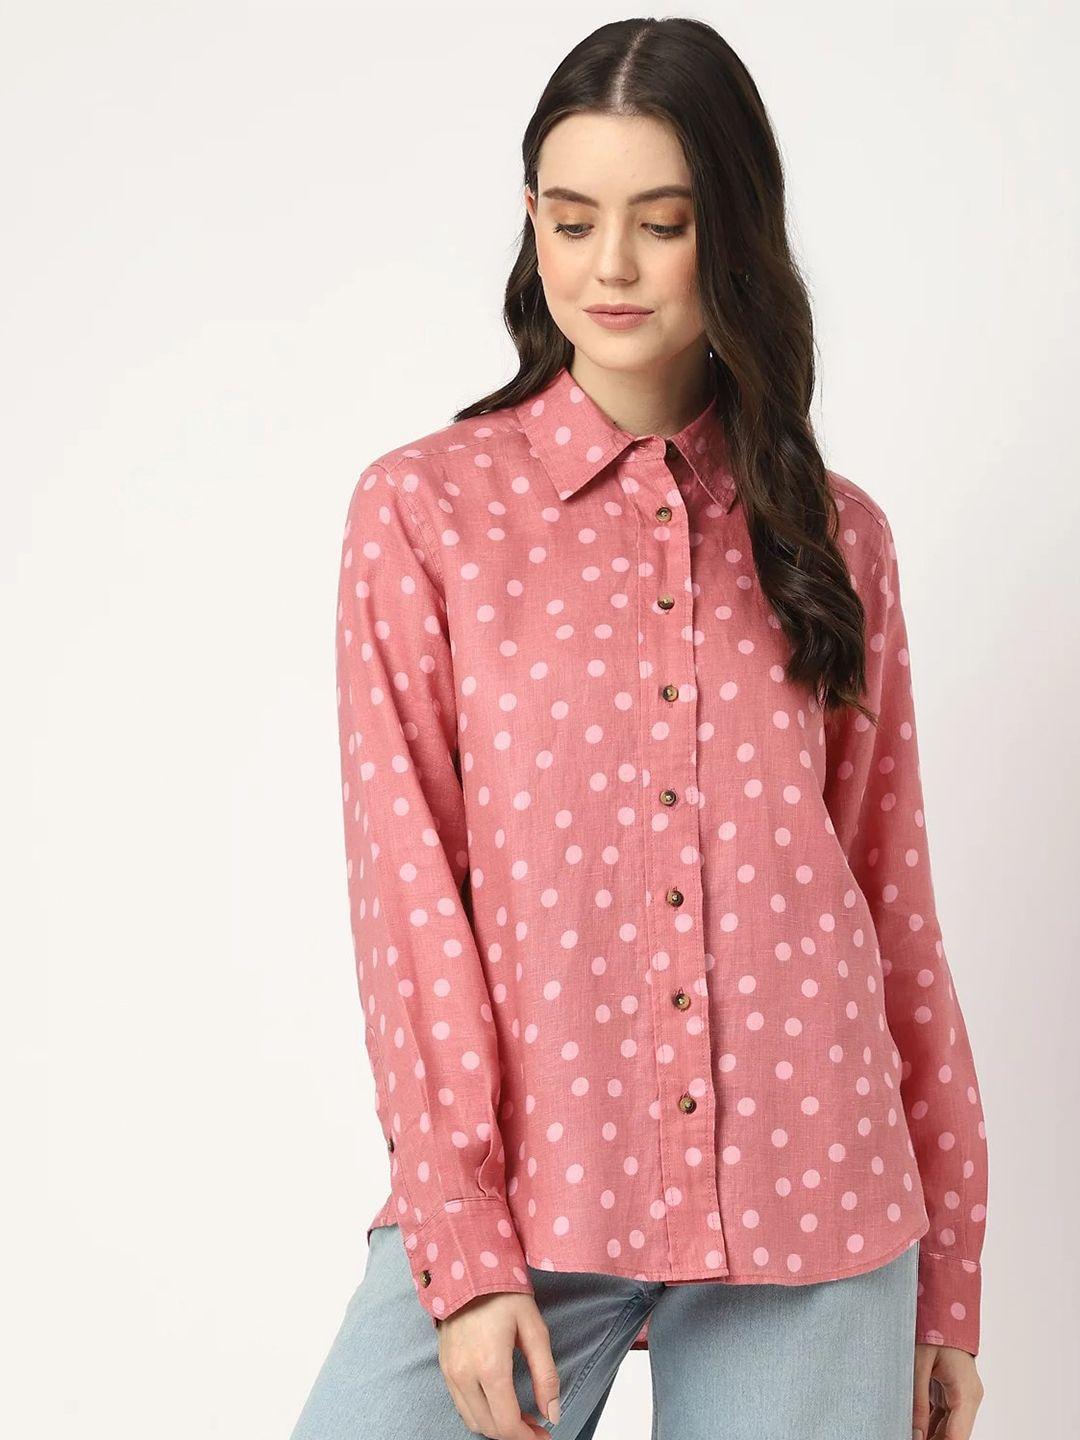 marks-&-spencer-polka-dots-printed-casual-shirt